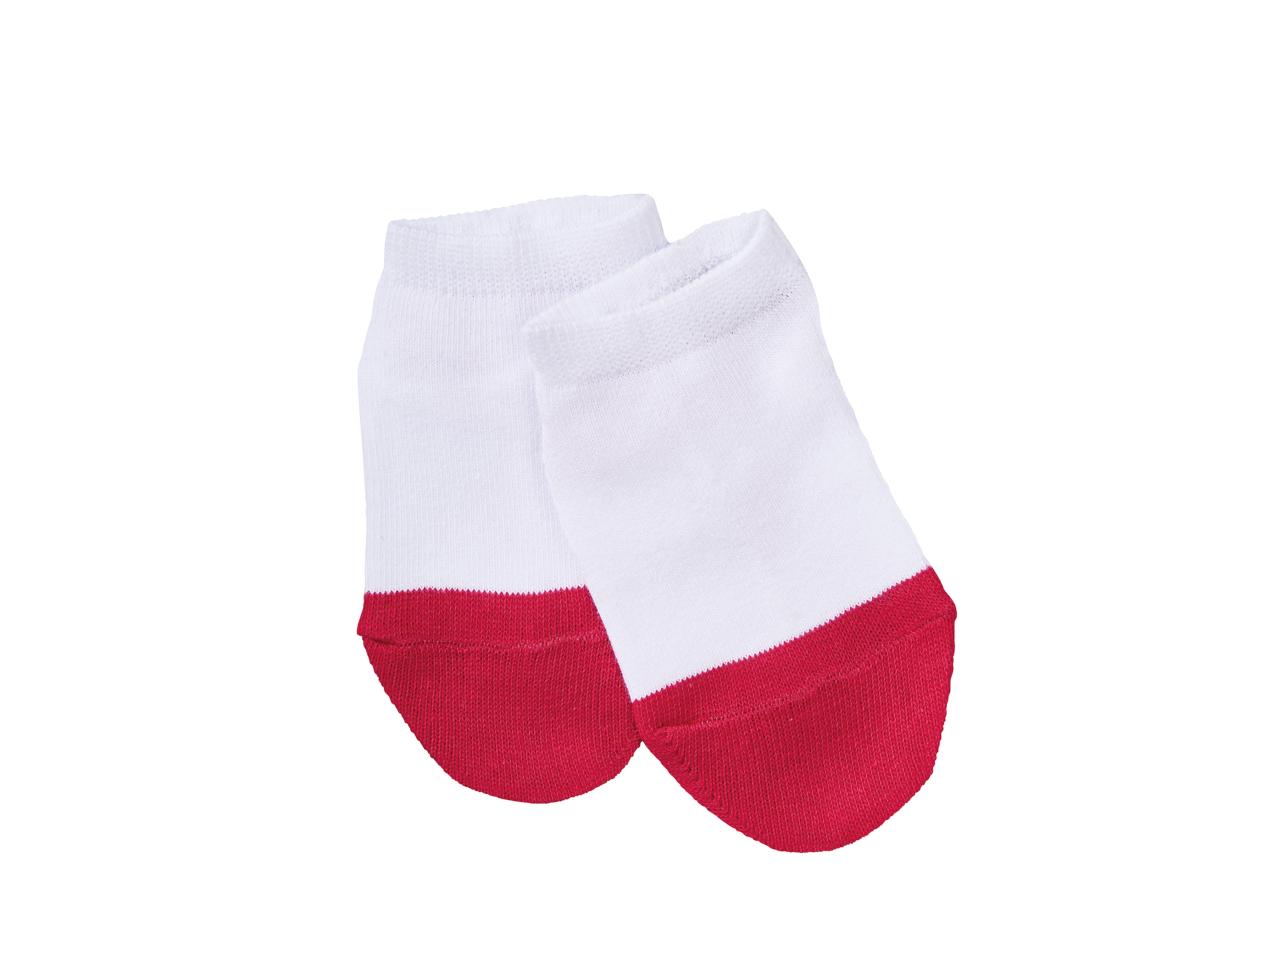 Lupilu Kids' Trainer Socks1